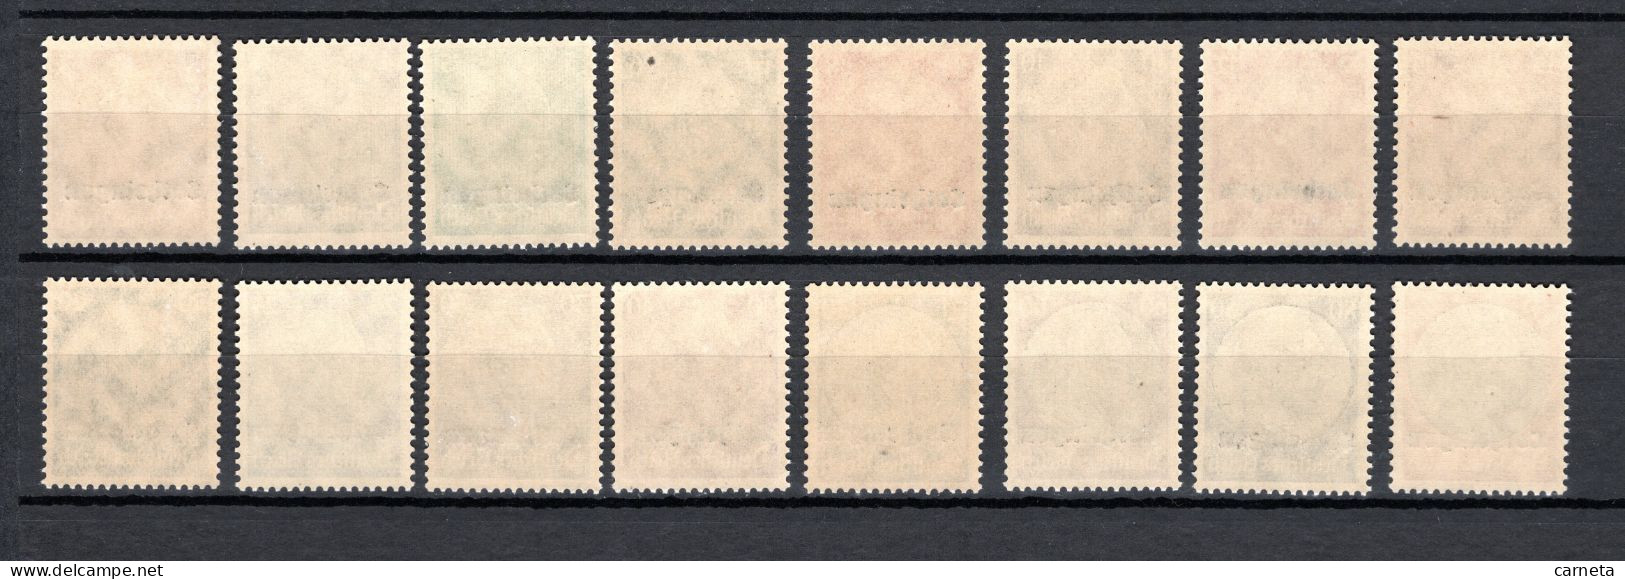 FRANCE  ALSACE LORRAINE   N° 24 à 39    NEUFS SANS CHARNIERE  COTE  88.00€   TIMBRES D'ALLEMAGNE  VOIR DESCRIPTION - Unused Stamps